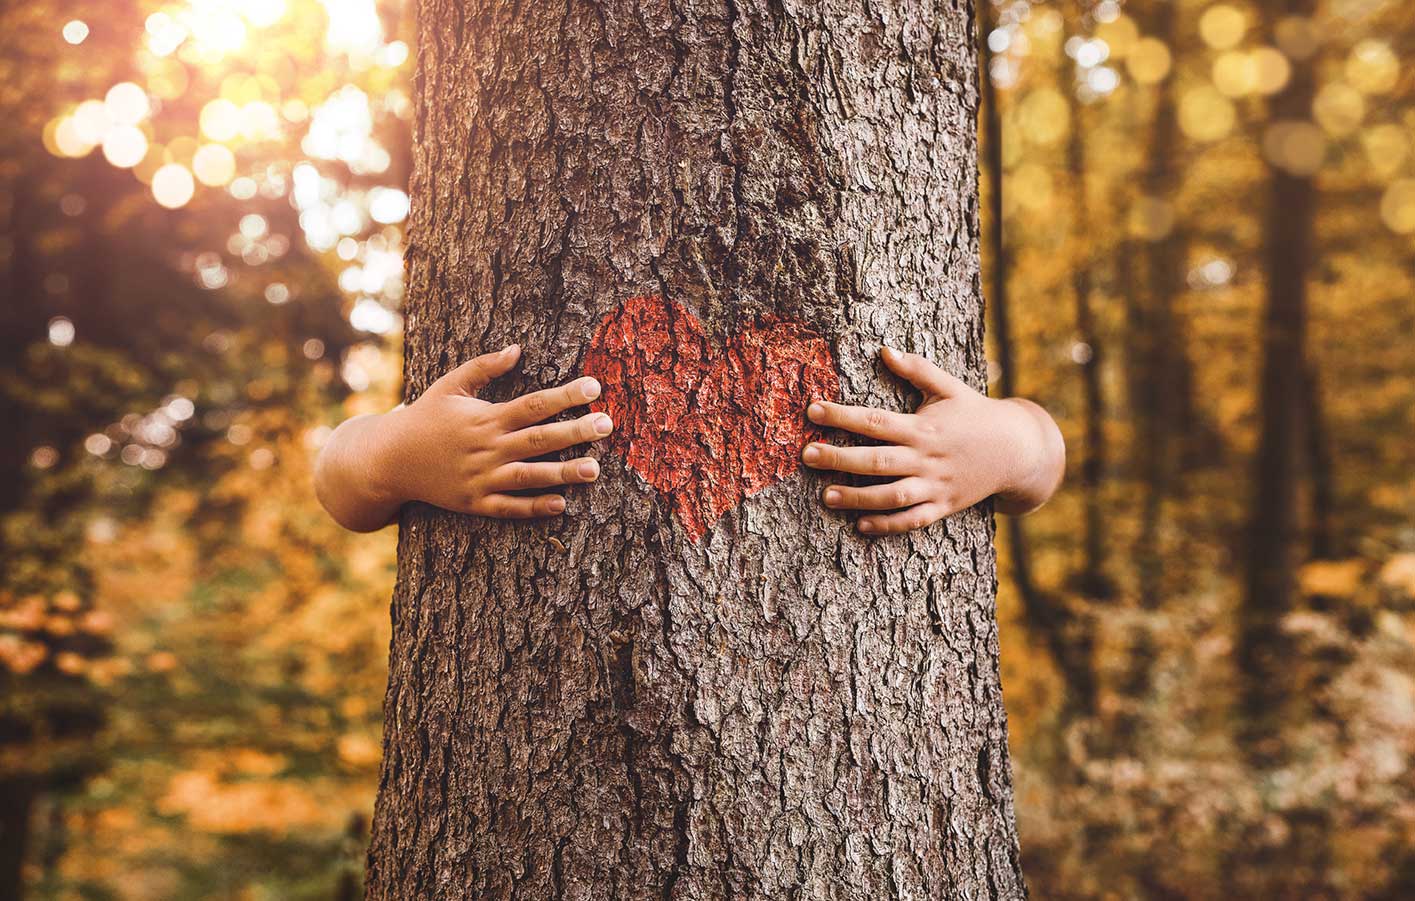 ein Mensch umarmt einen Baum, auf der Rinde ist ein rotes Herz gemalt